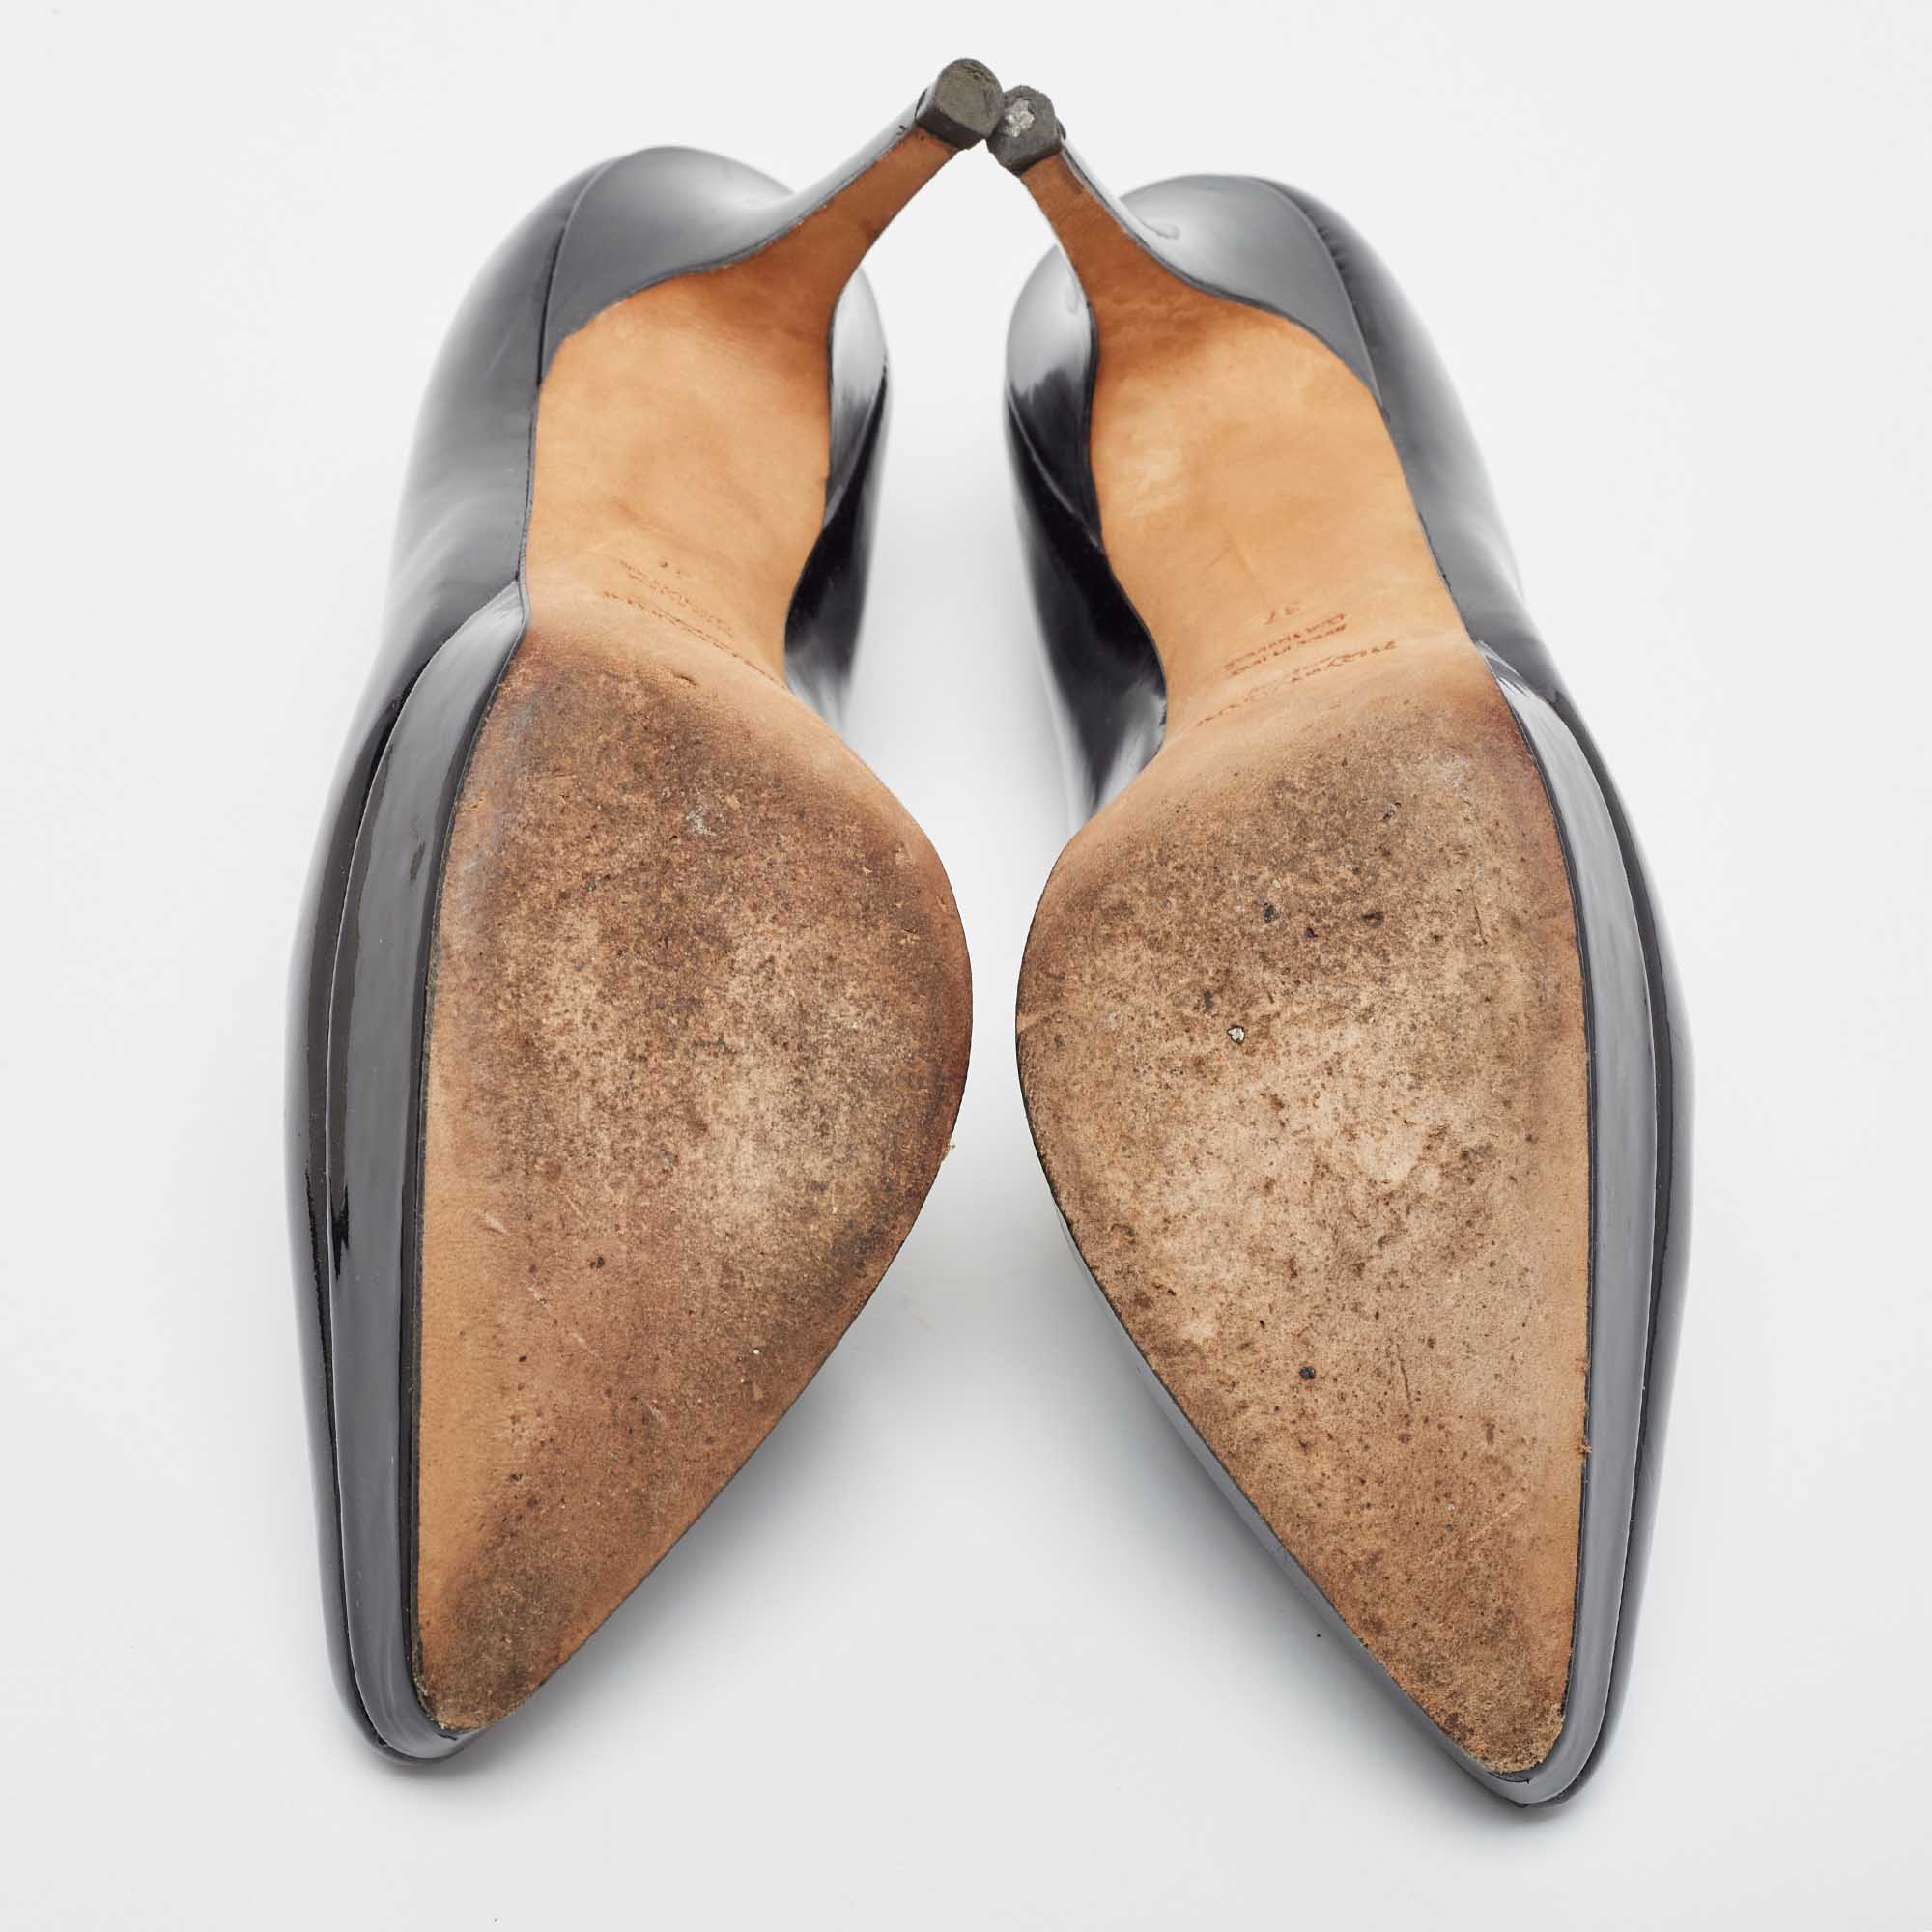 Yves Saint Laurent Black Patent Leather Platform Pointed Toe Pumps Size 37